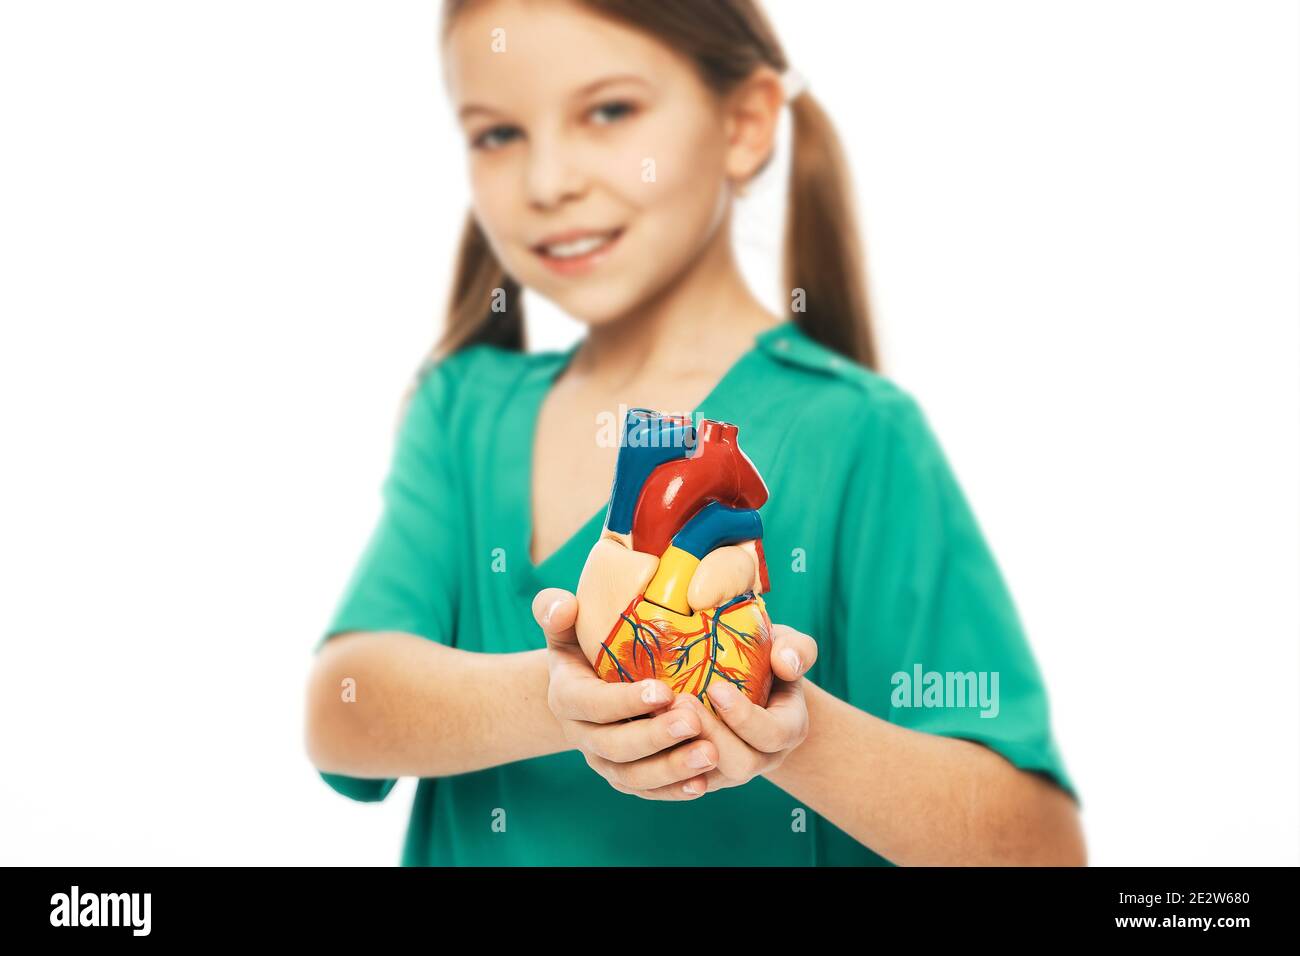 Fille portant un uniforme médical vert et tenant un modèle anatomique de coeur dans les mains. Concept de santé cardiaque et diagnostic de la disea cardiaque des enfants Banque D'Images